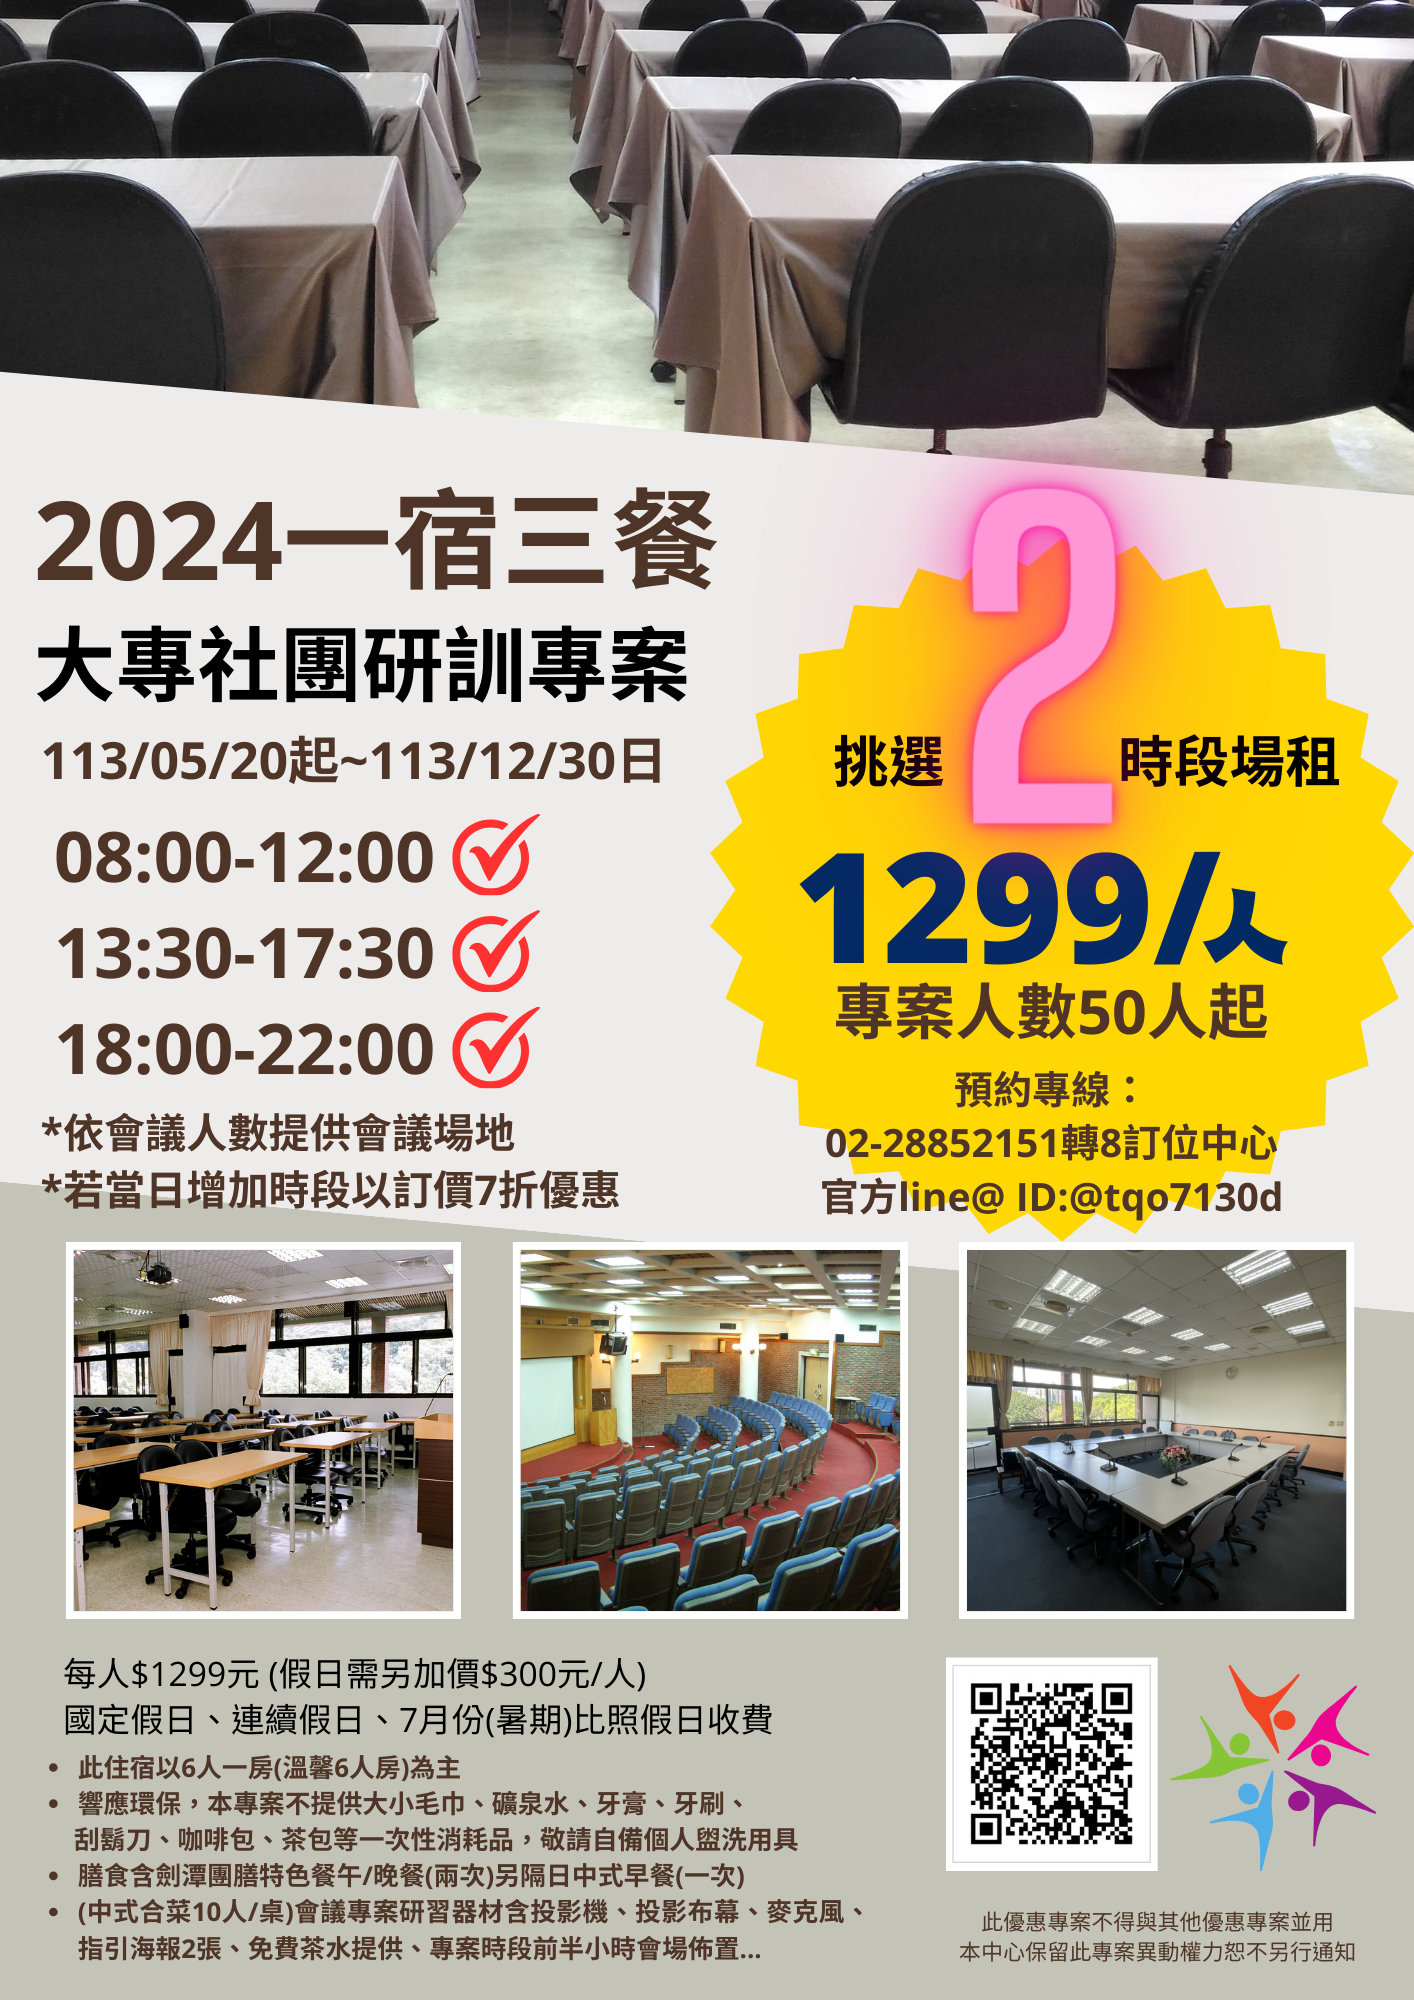 附件二-2024 劍潭中心大專社團研訓專案 (一宿三餐)宣傳單